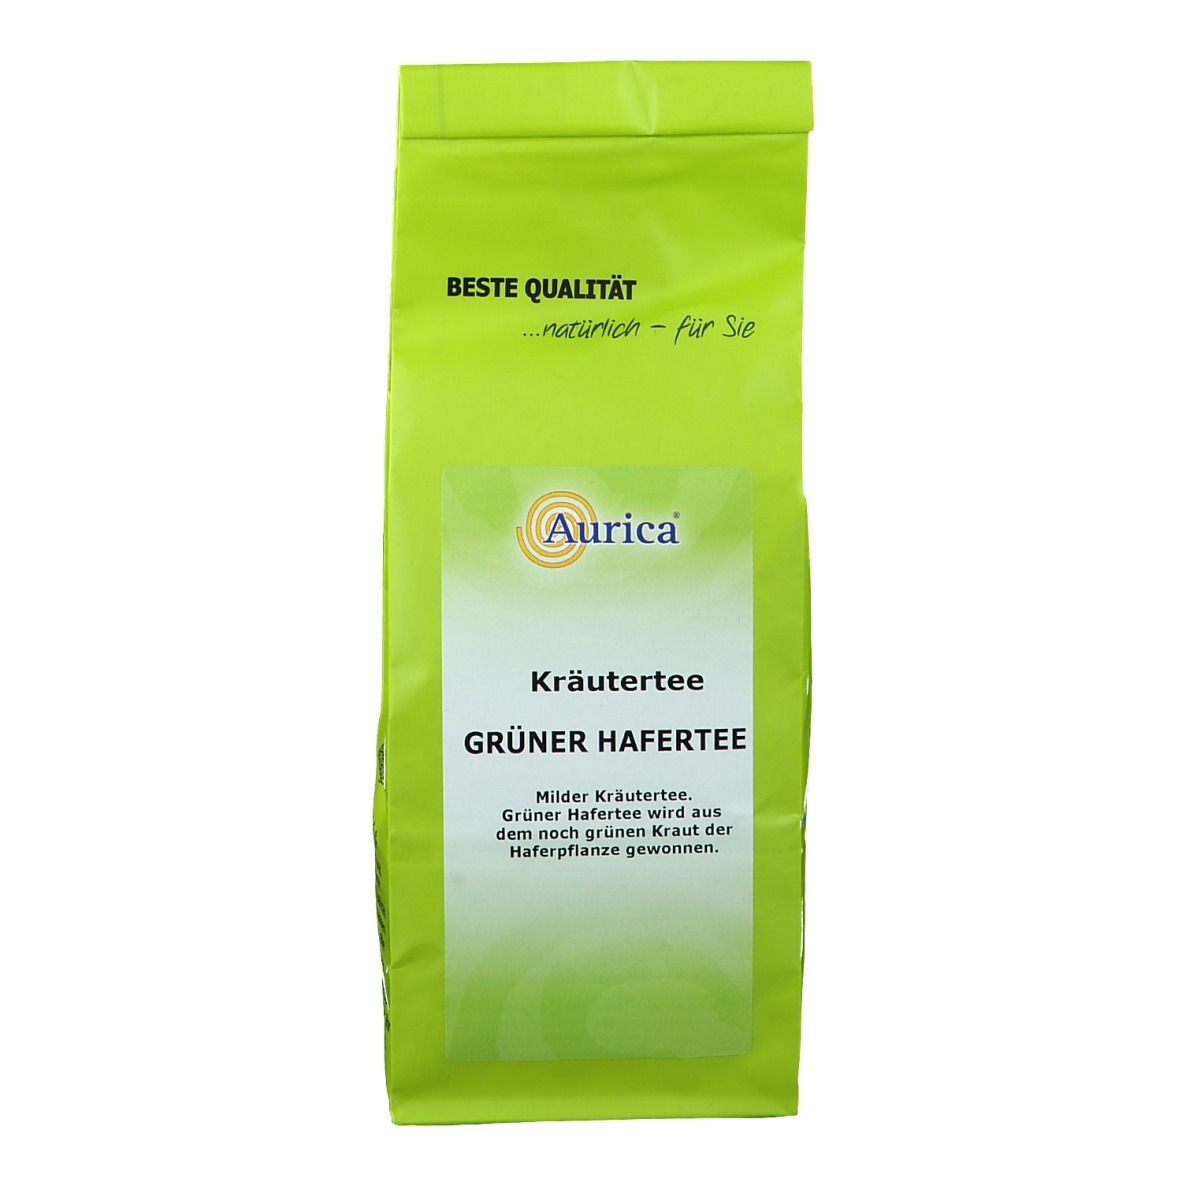 Aurica® Grüner Hafertee